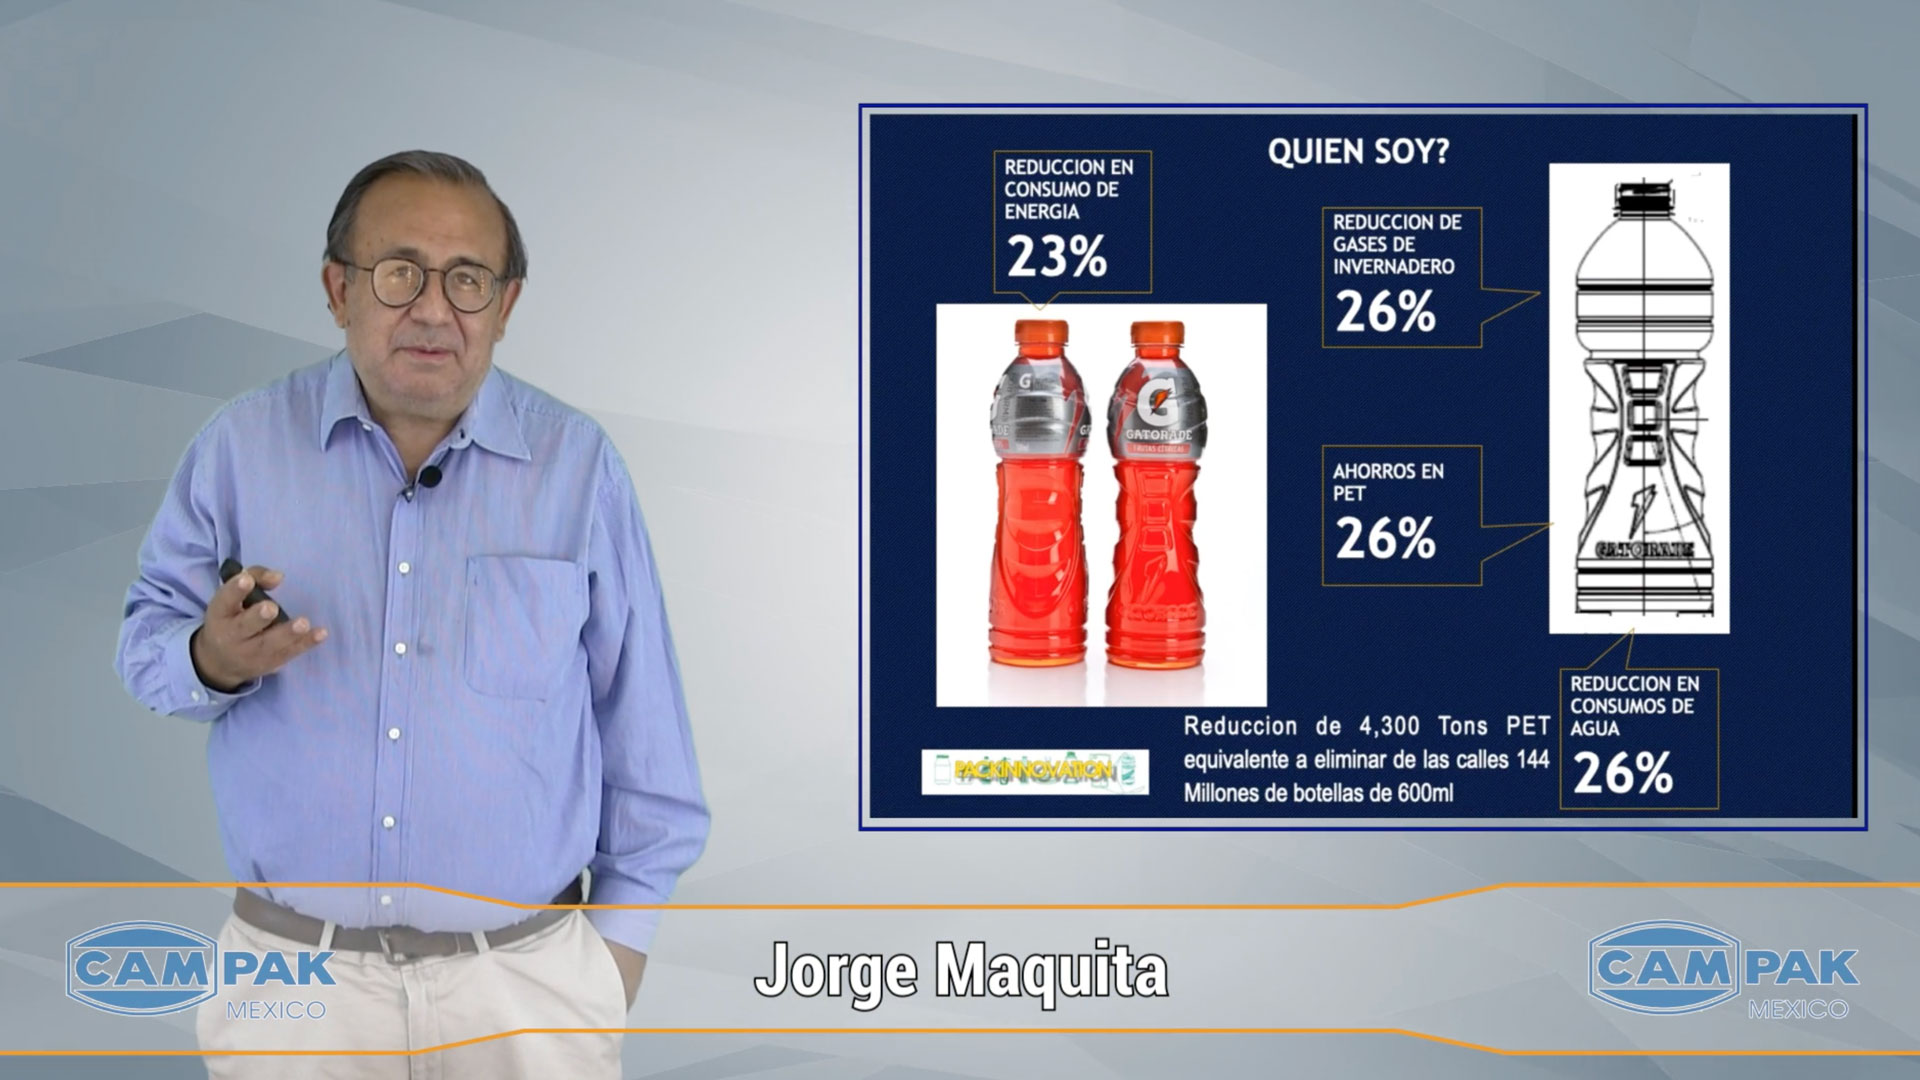 JORGE MAQUITA - El Empaque: función, retos y oportunidades